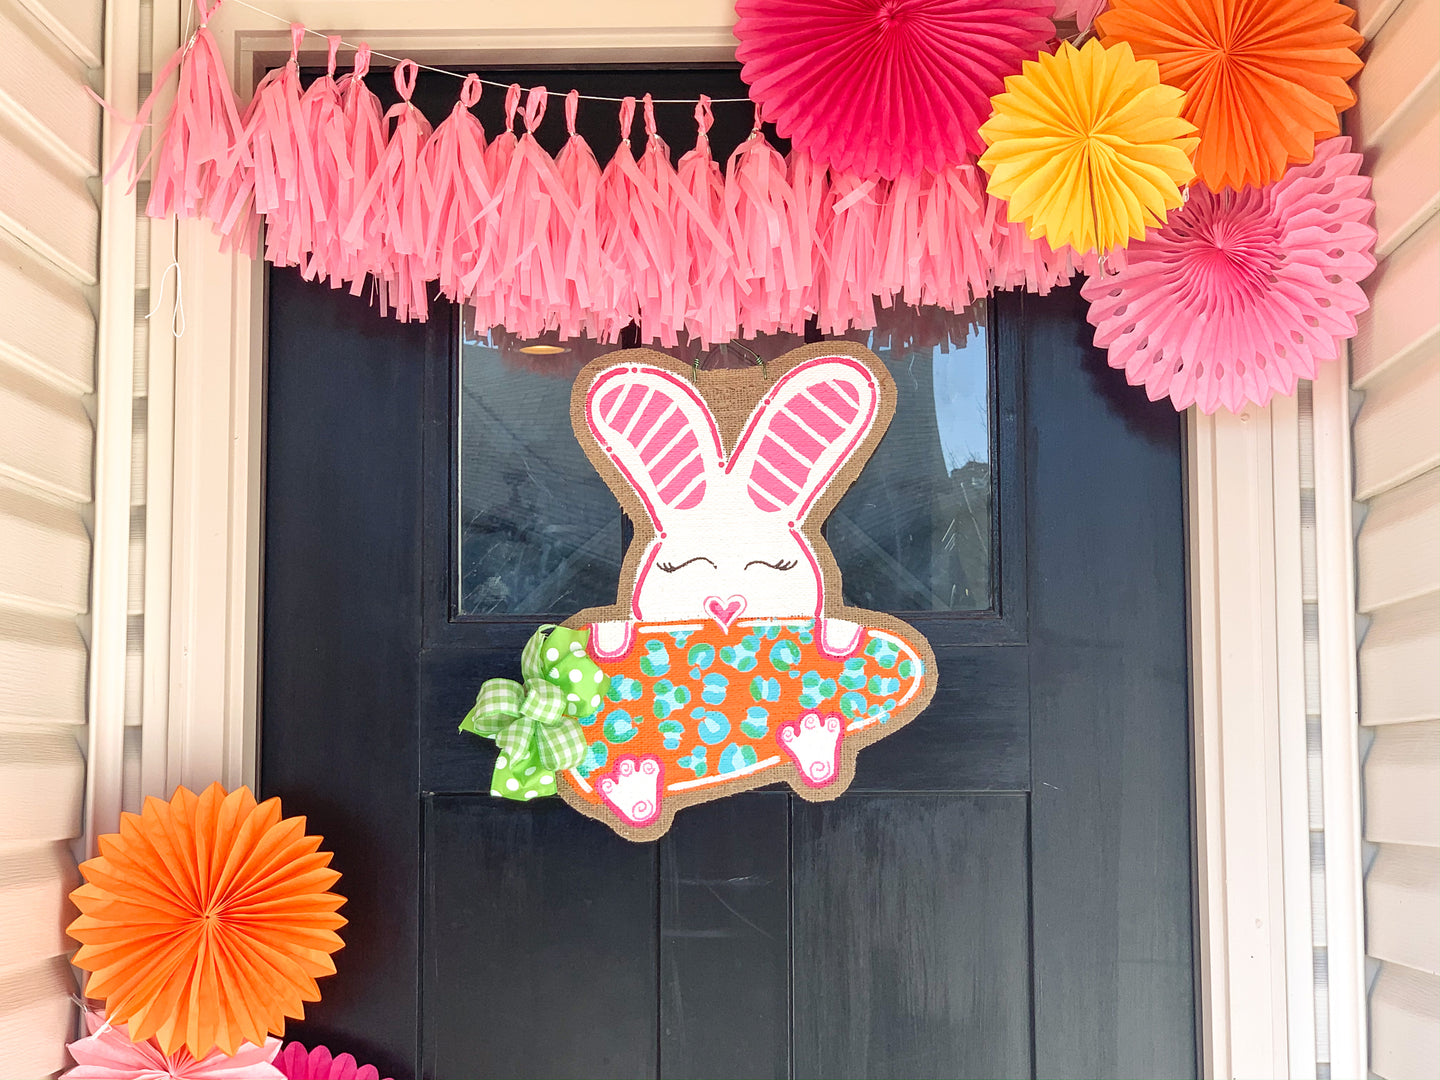 Easter Bunny Burlap Door Hanger - Bunny with Carrot Style DoorCandy